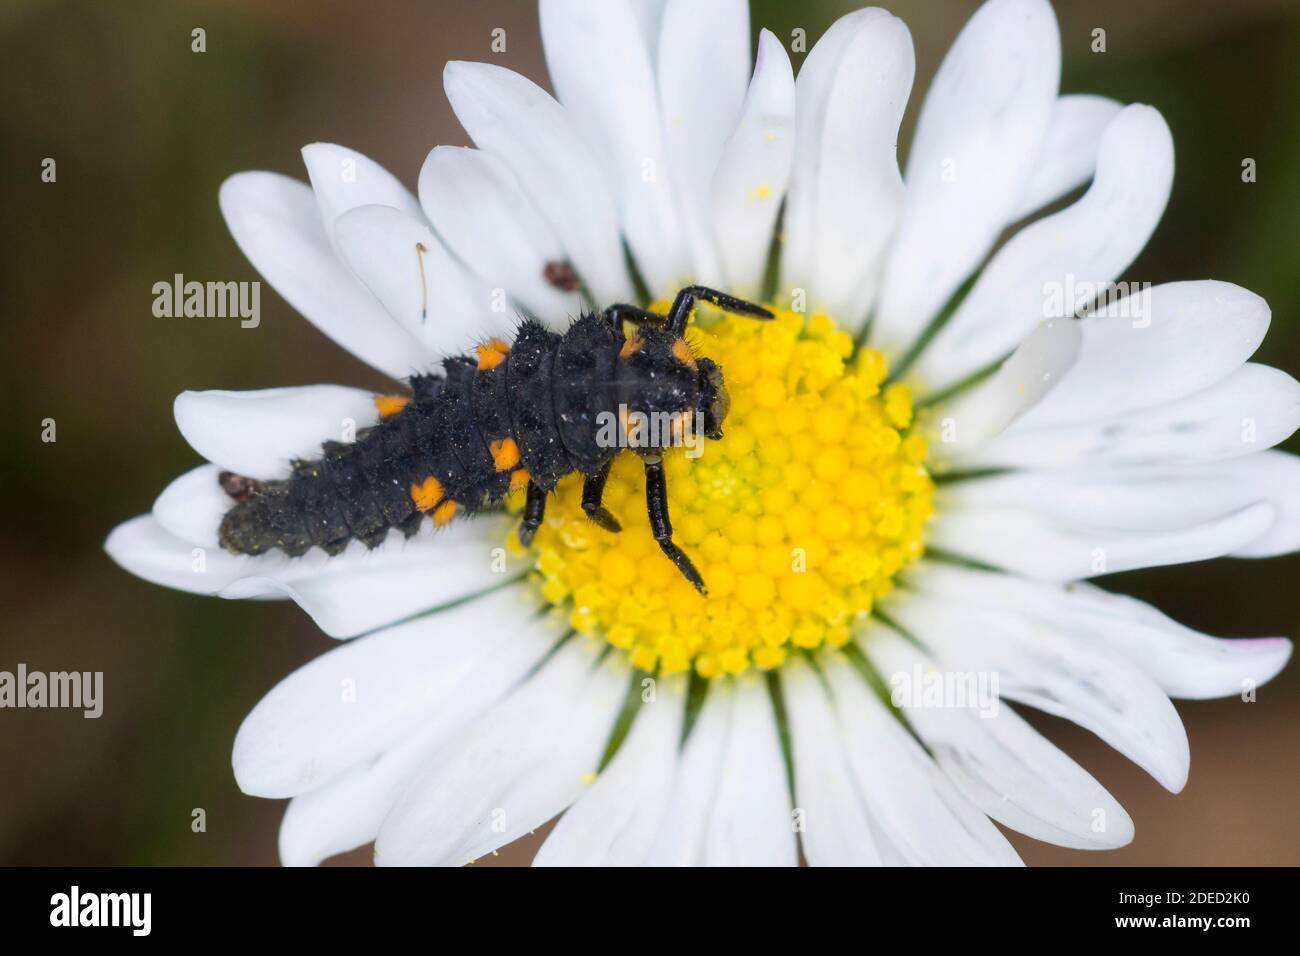 seven-spot ladybird, sevenspot ladybird, 7-spot ladybird (Coccinella septempunctata), larva on a daisy blossom, Germany Stock Photo